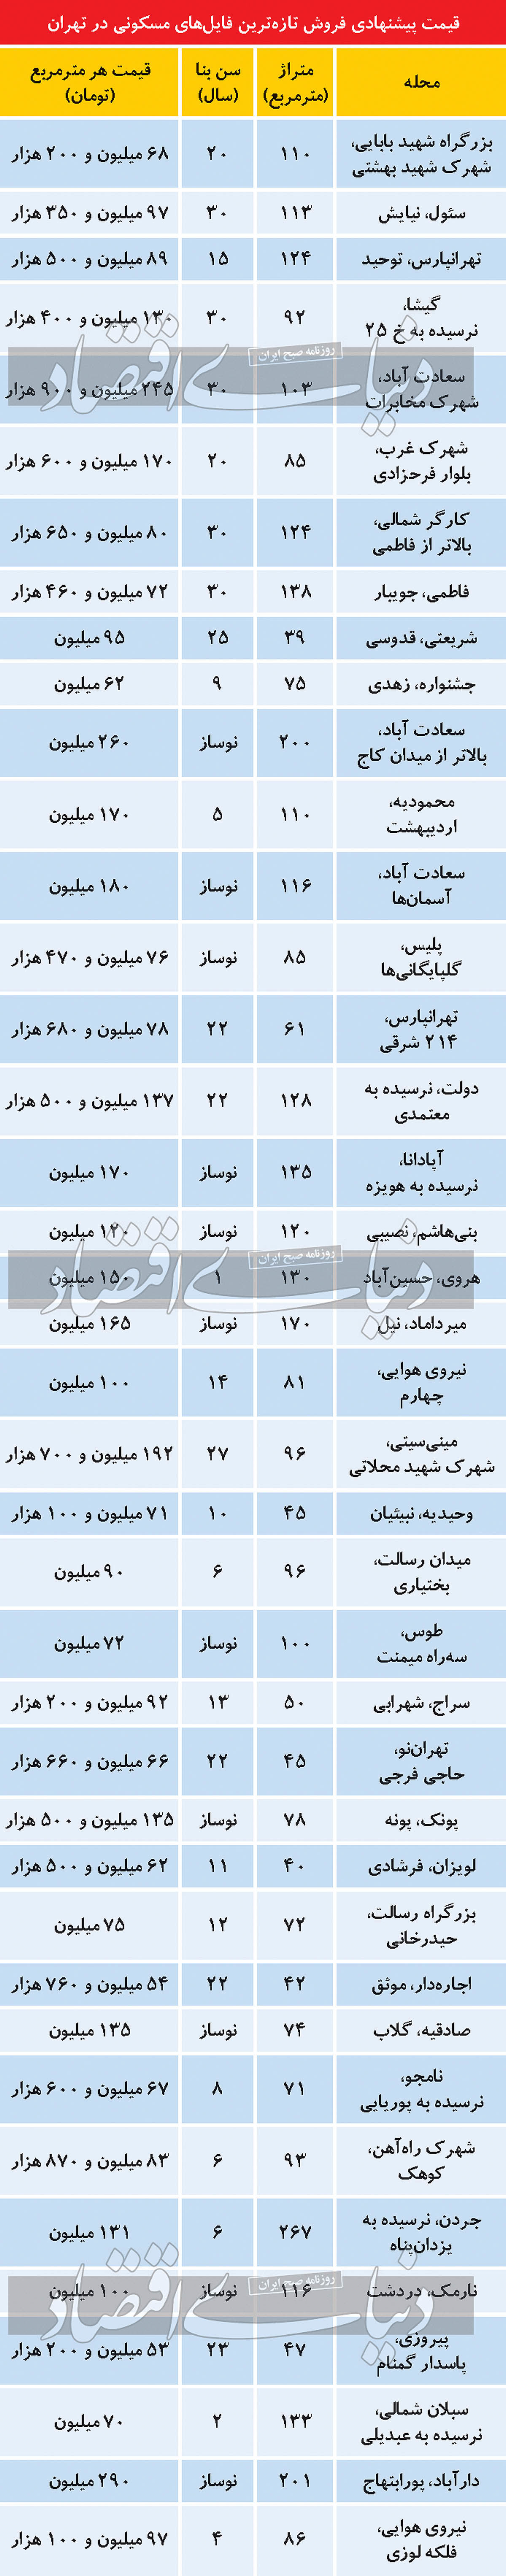  جدول تازه ترین قیمت های مسکن پایتخت